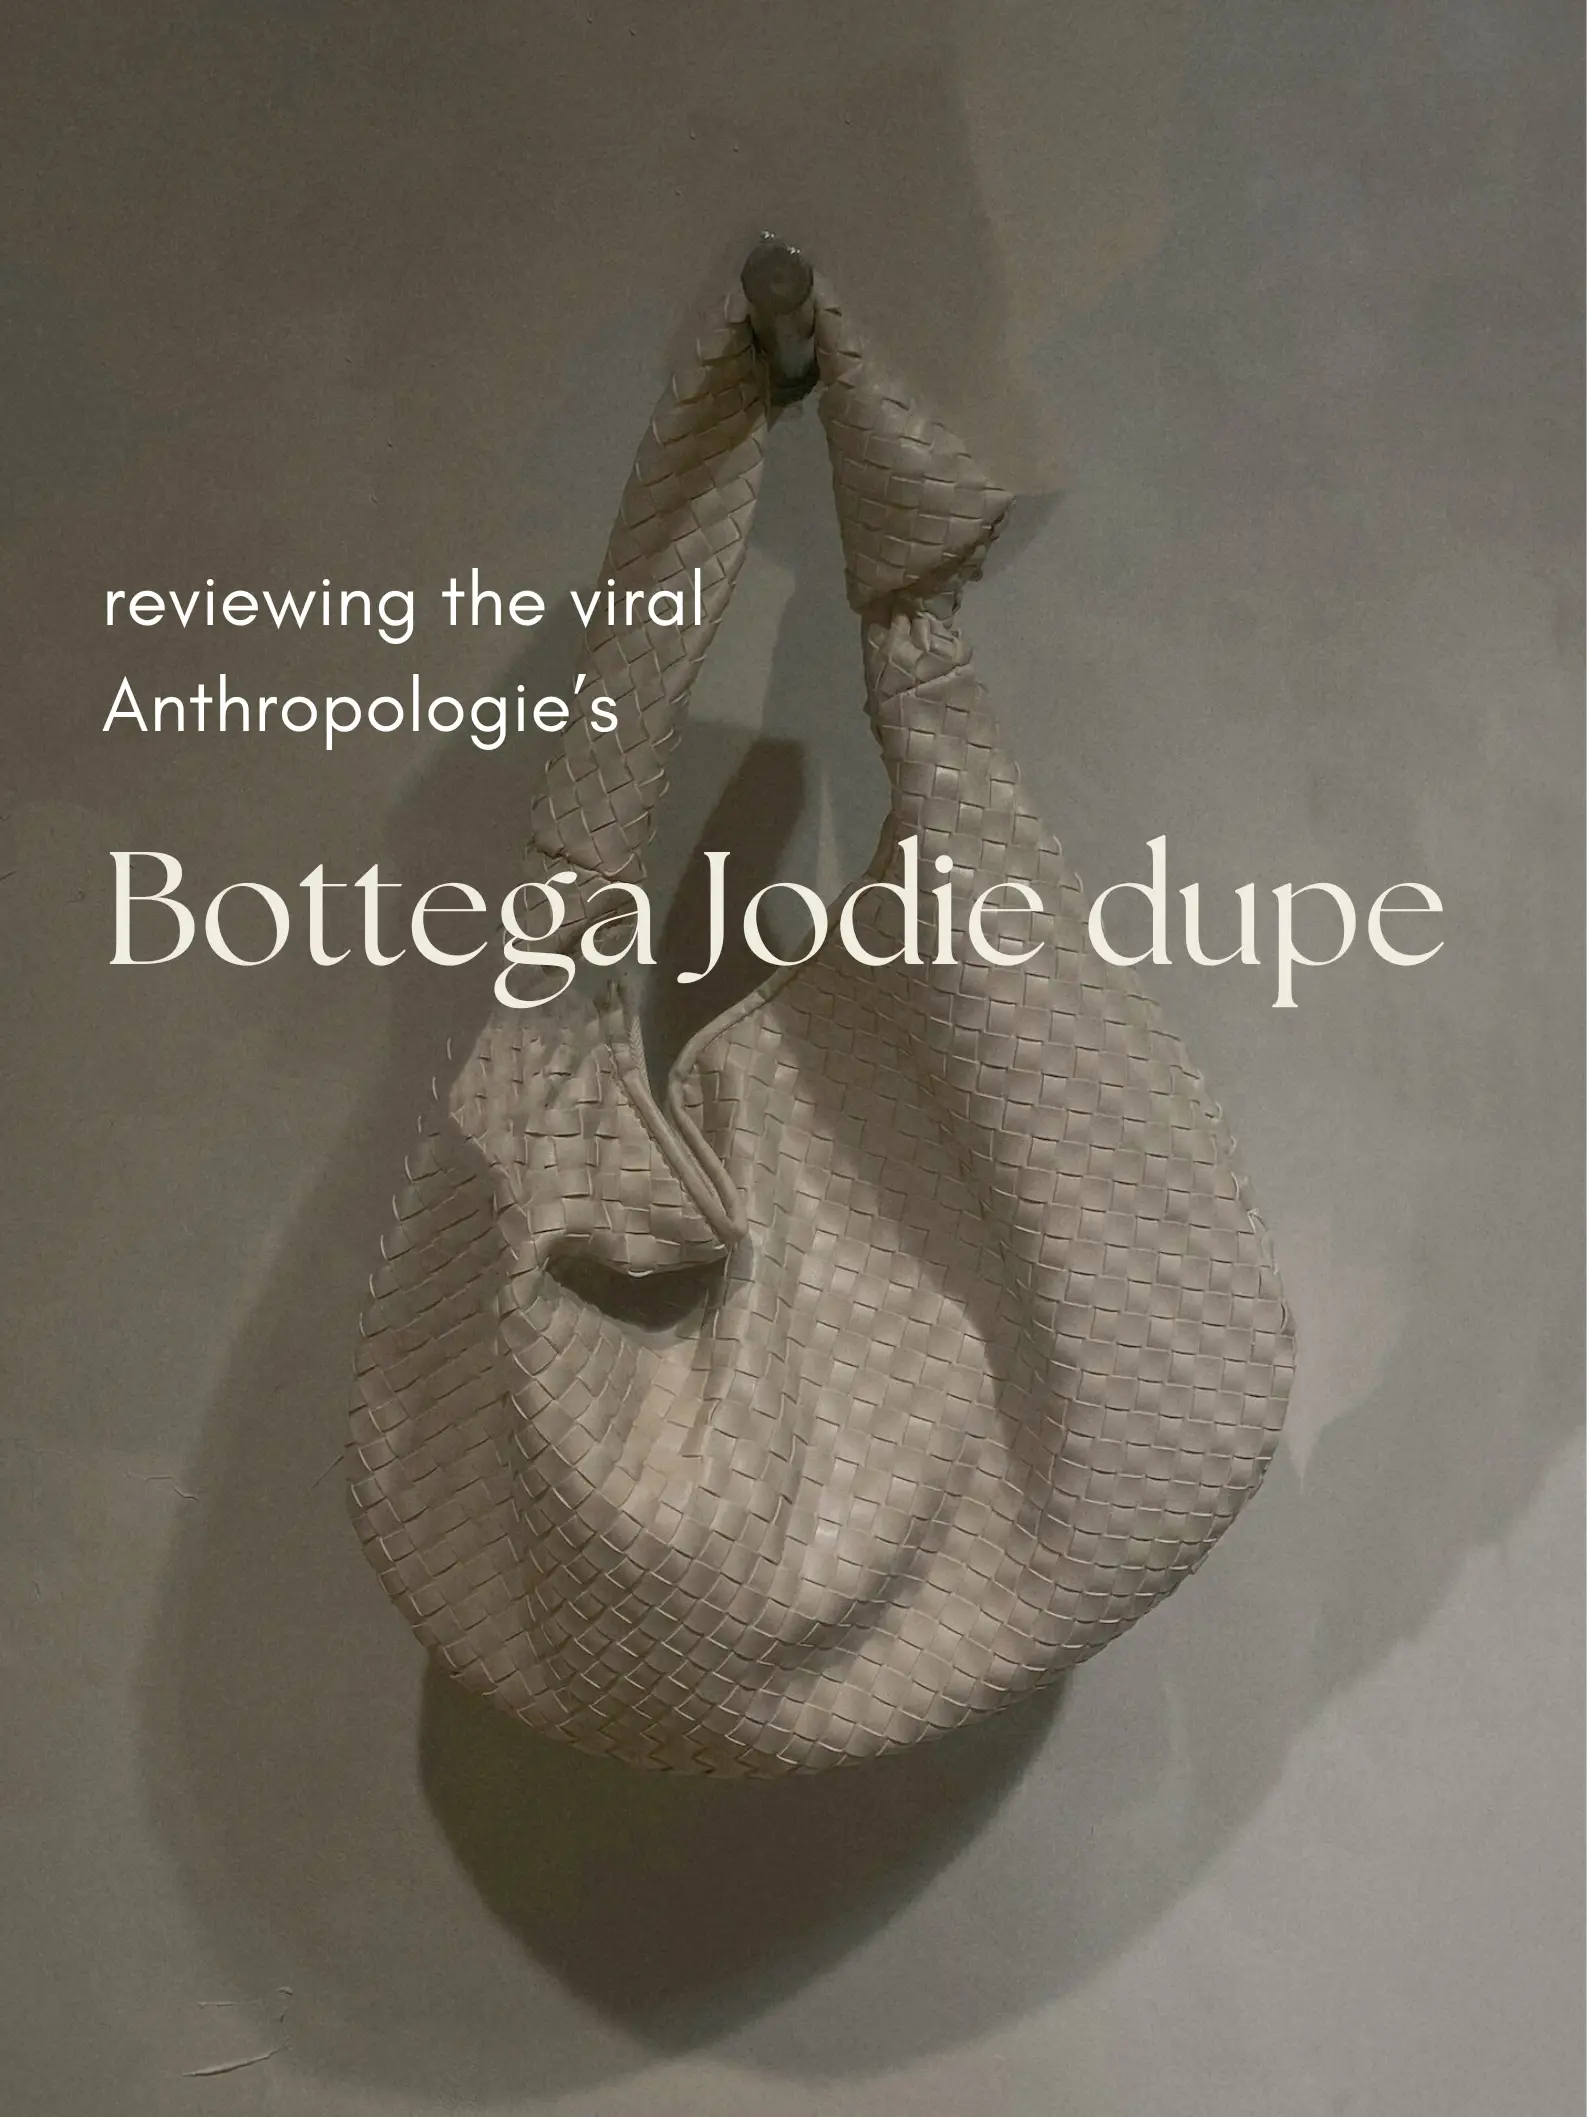 Introducing The Bottega Veneta BV Jodie Bag